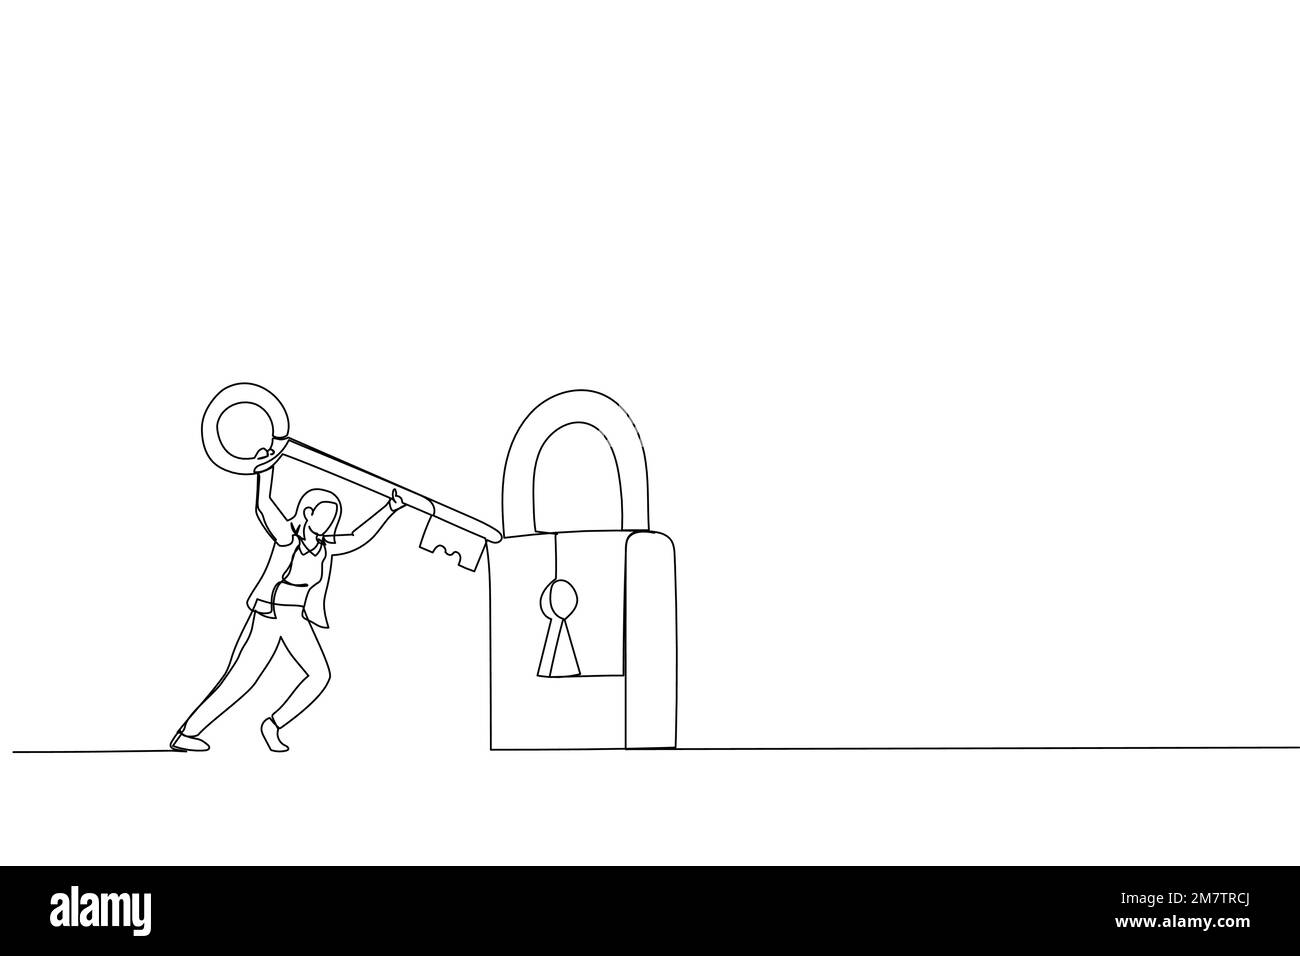 Cartoon mit einer klugen Geschäftsfrau, die den Schlüssel hält, um das Pad zu entriegeln. Metapher für Problemlösung, Lösungen und Business Accessibility. Durchgehende Linie Stock Vektor